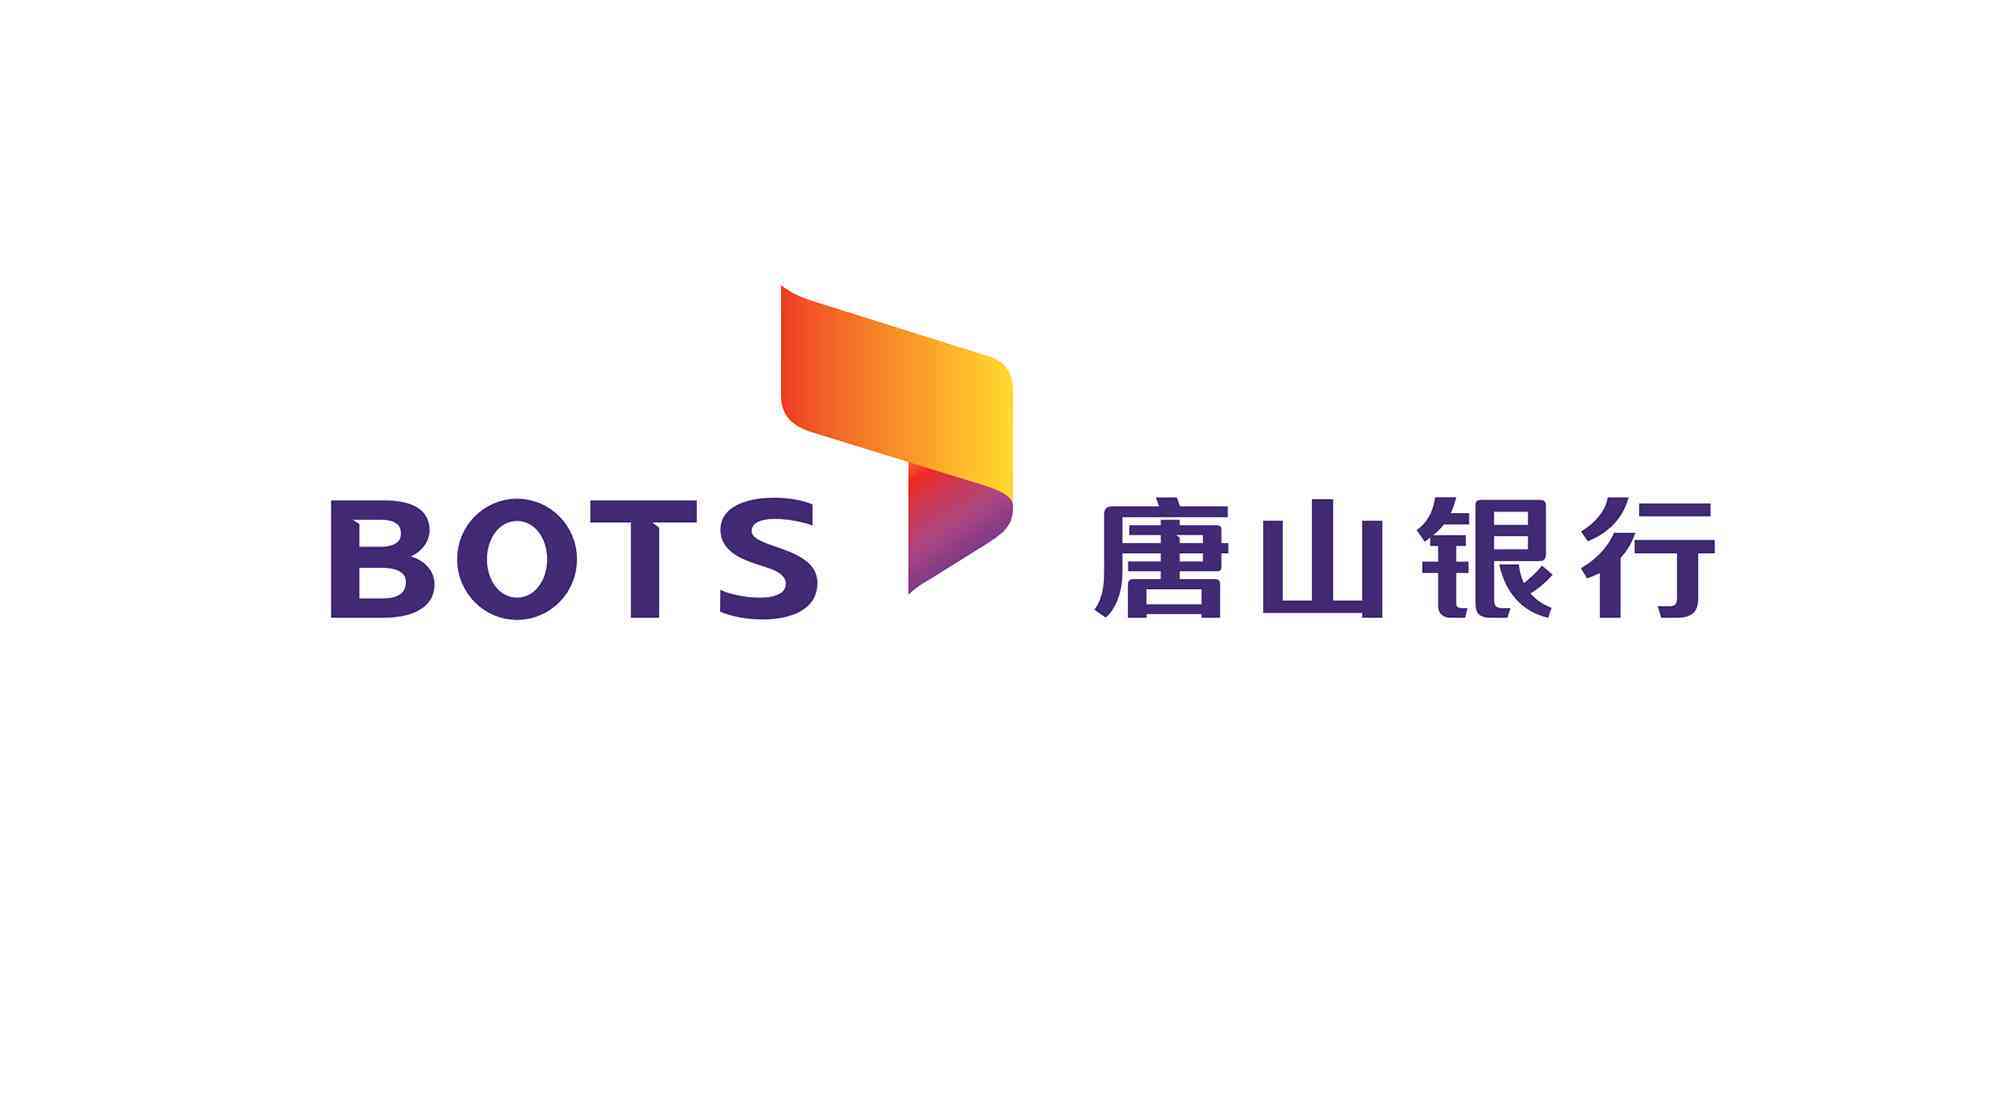 唐山银行logo设计图片素材